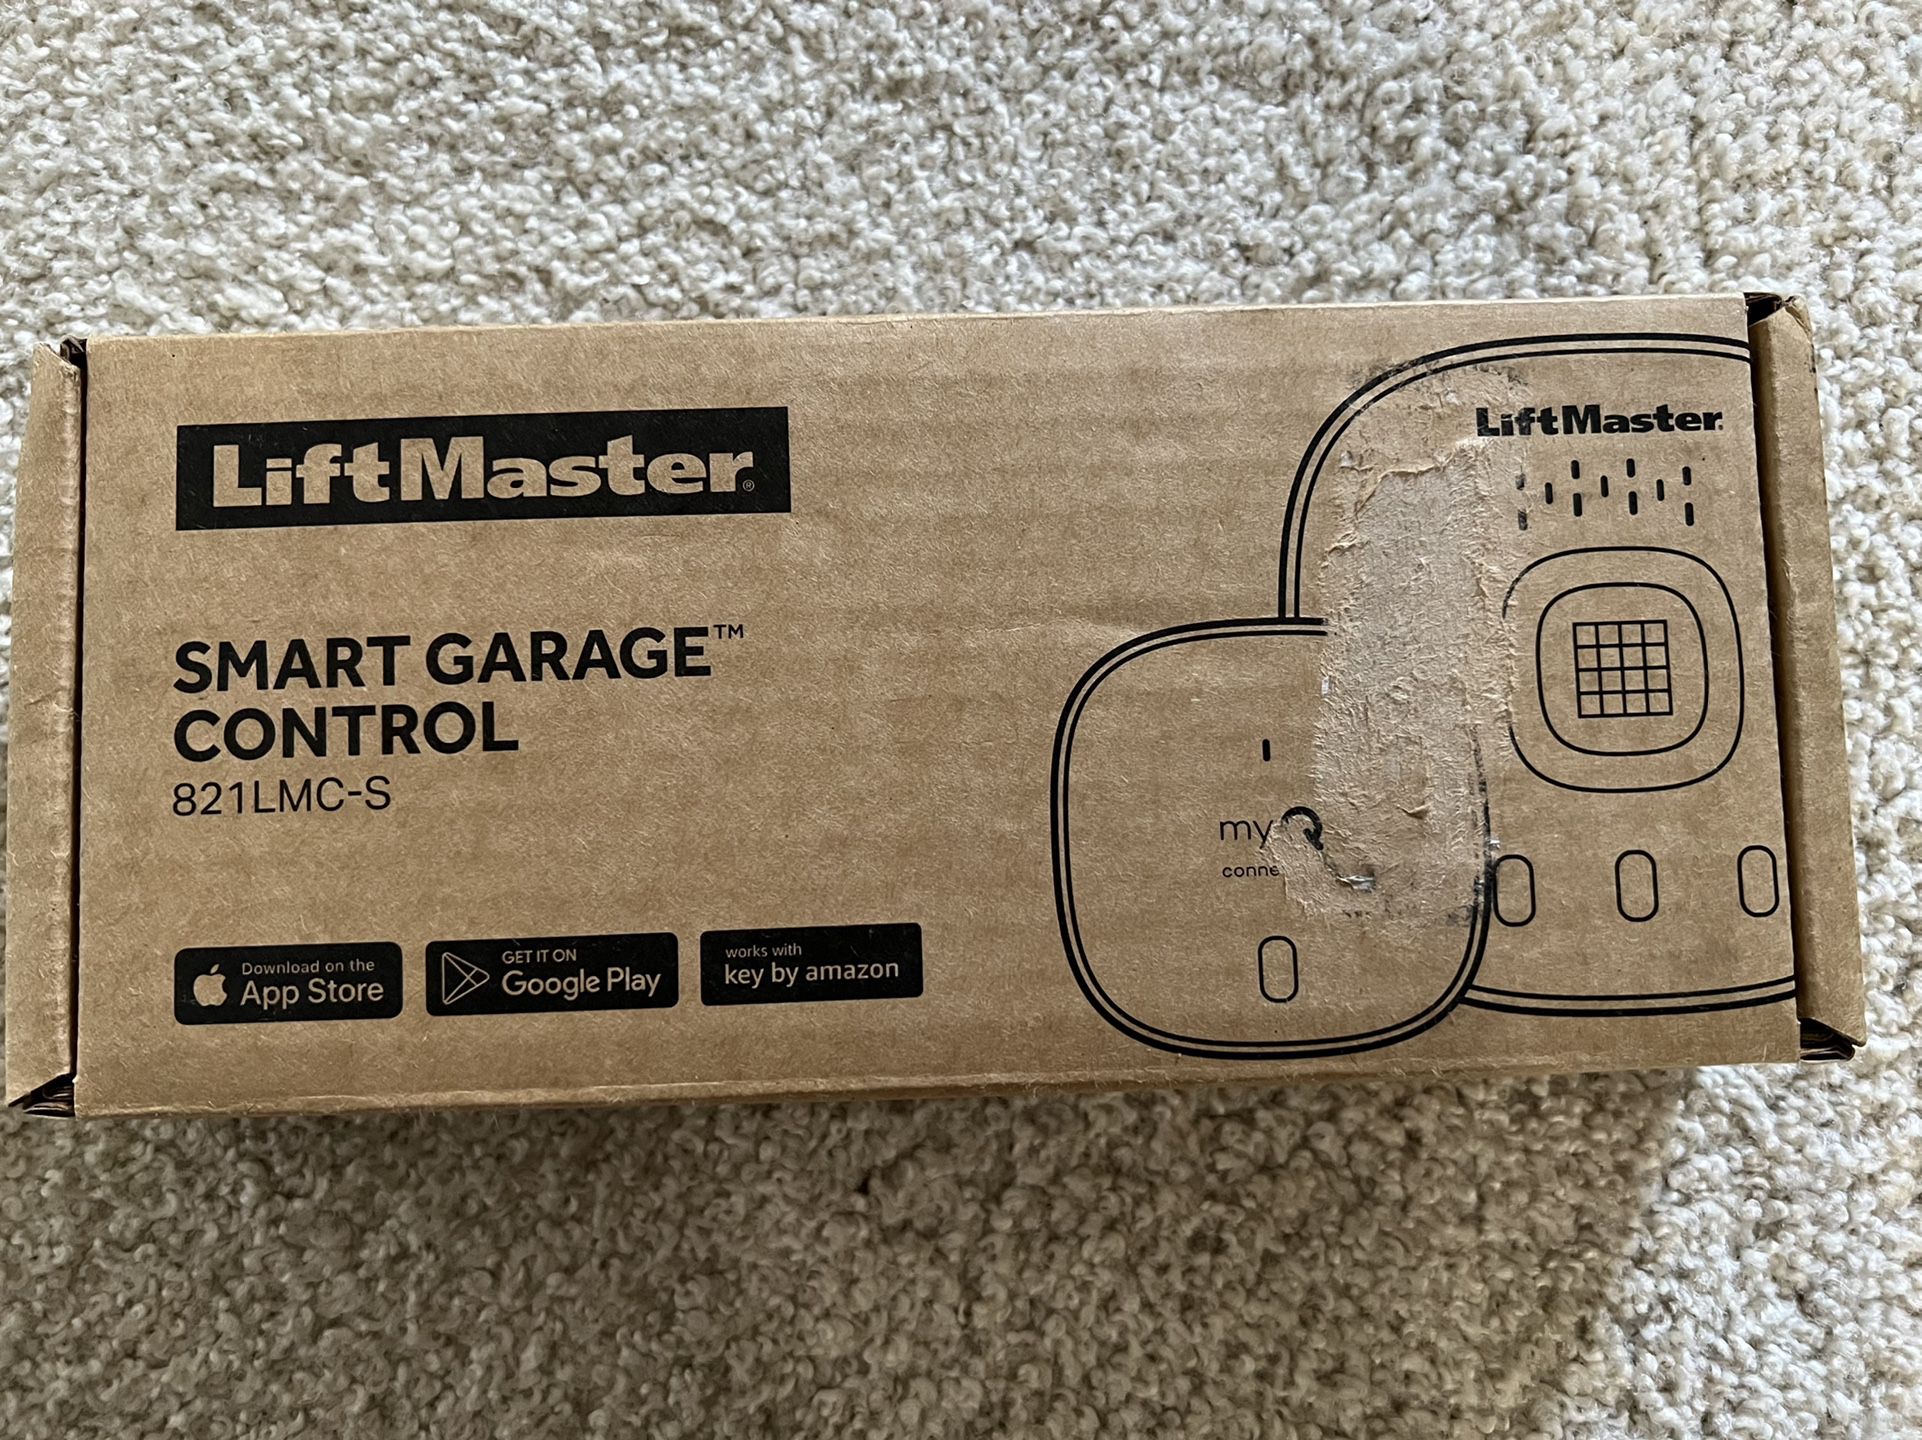 New LiftMaster garage door Smart Garage Control 